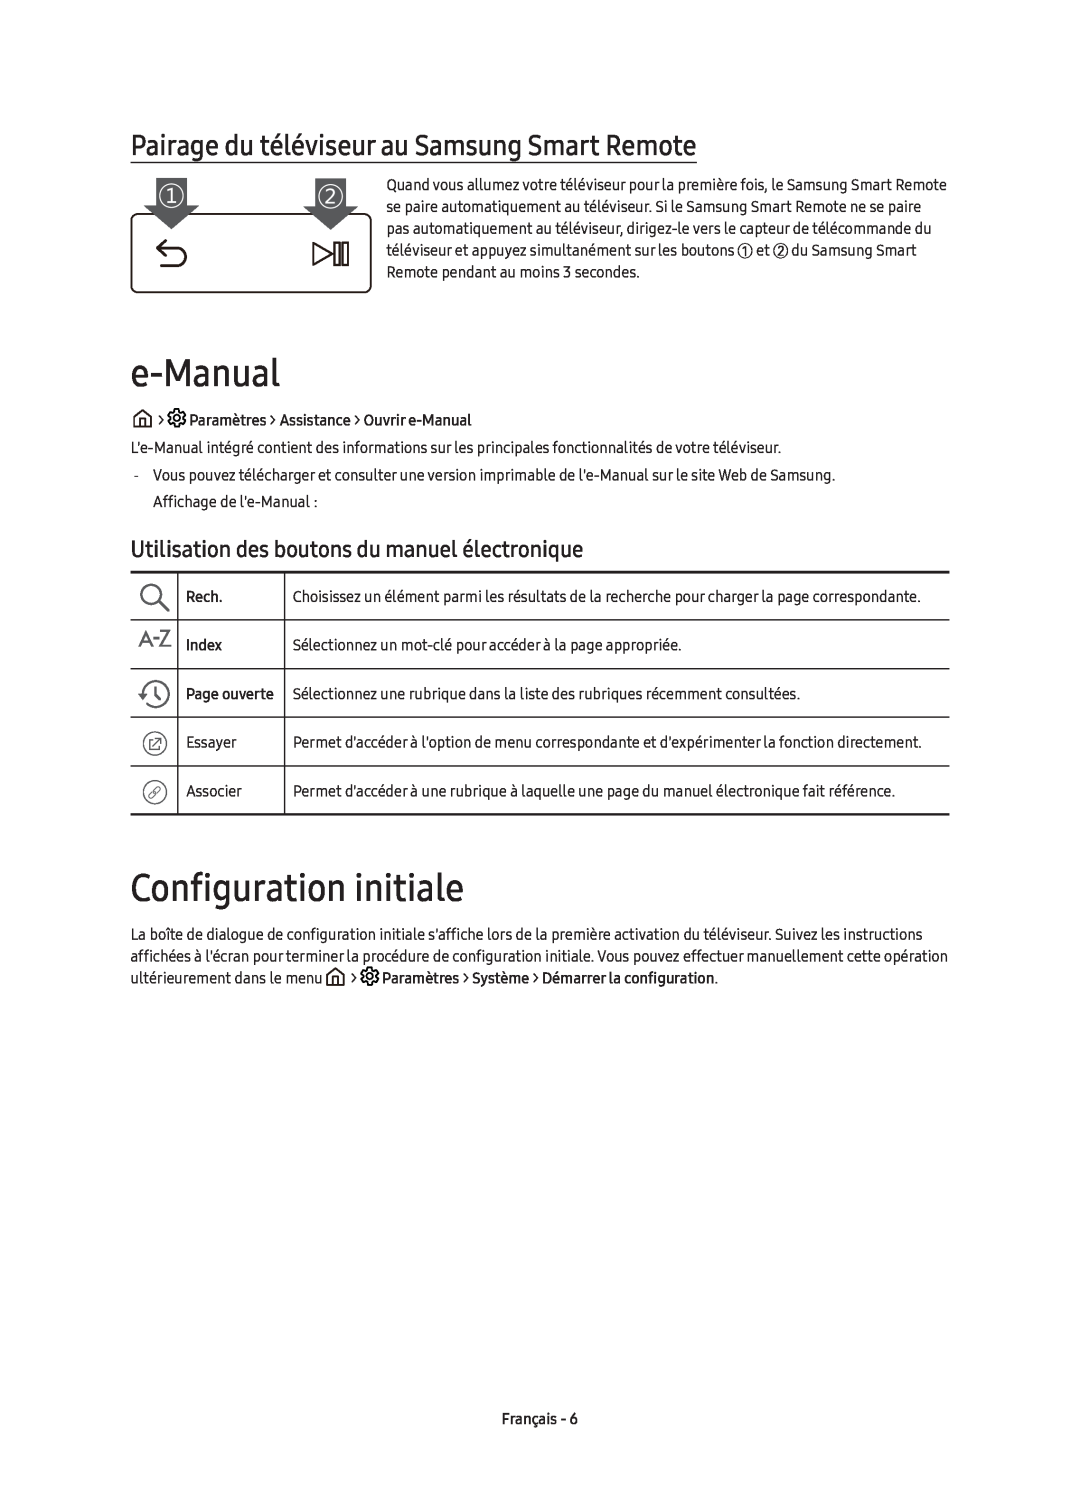 Samsung UE55KS7590UXZG manual e-Manual, Configuration initiale, Pairage du téléviseur au Samsung Smart Remote, Rech, Index 